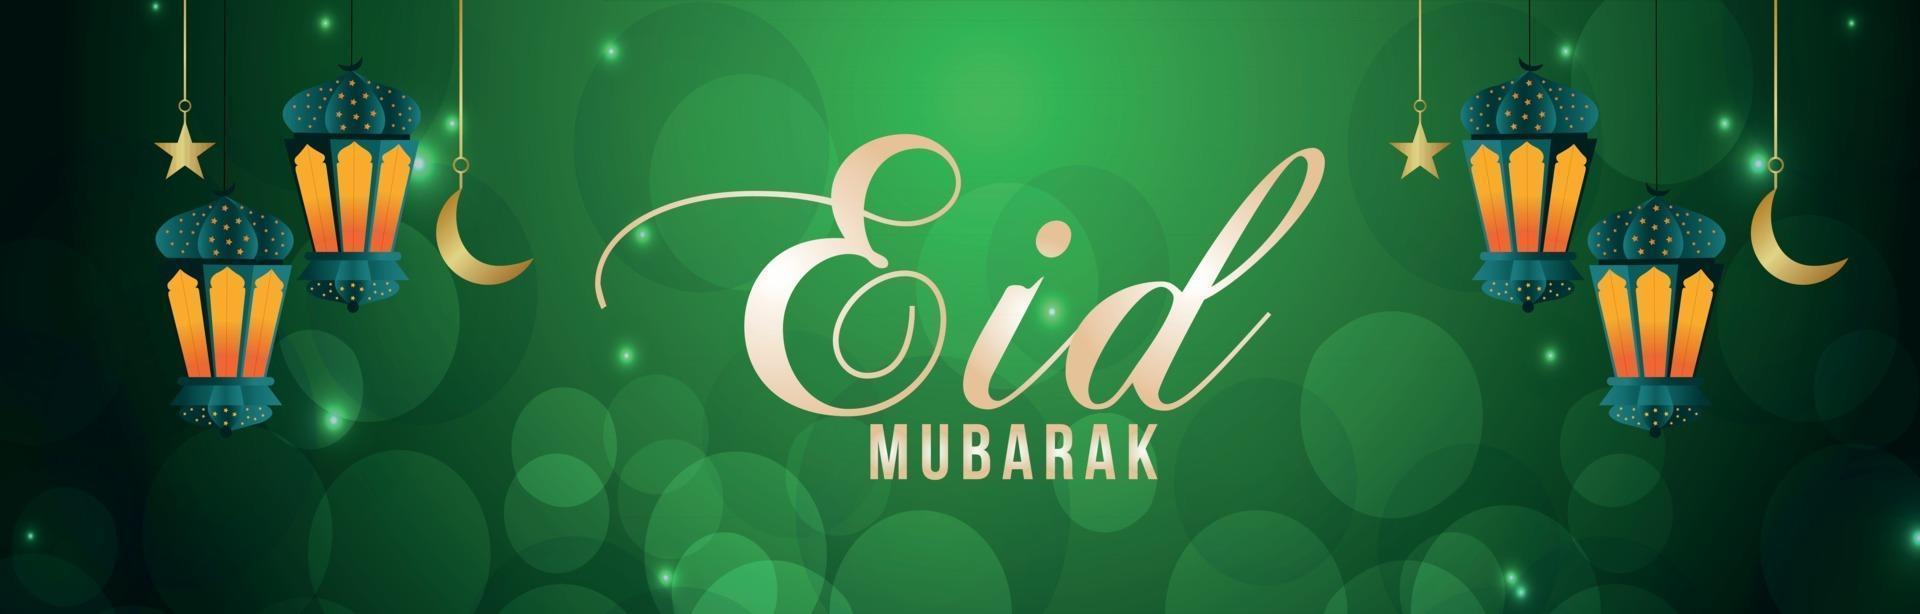 Eid Mubarak Einladung Benner mit Vektor-Illustration und arabischer Laterne vektor